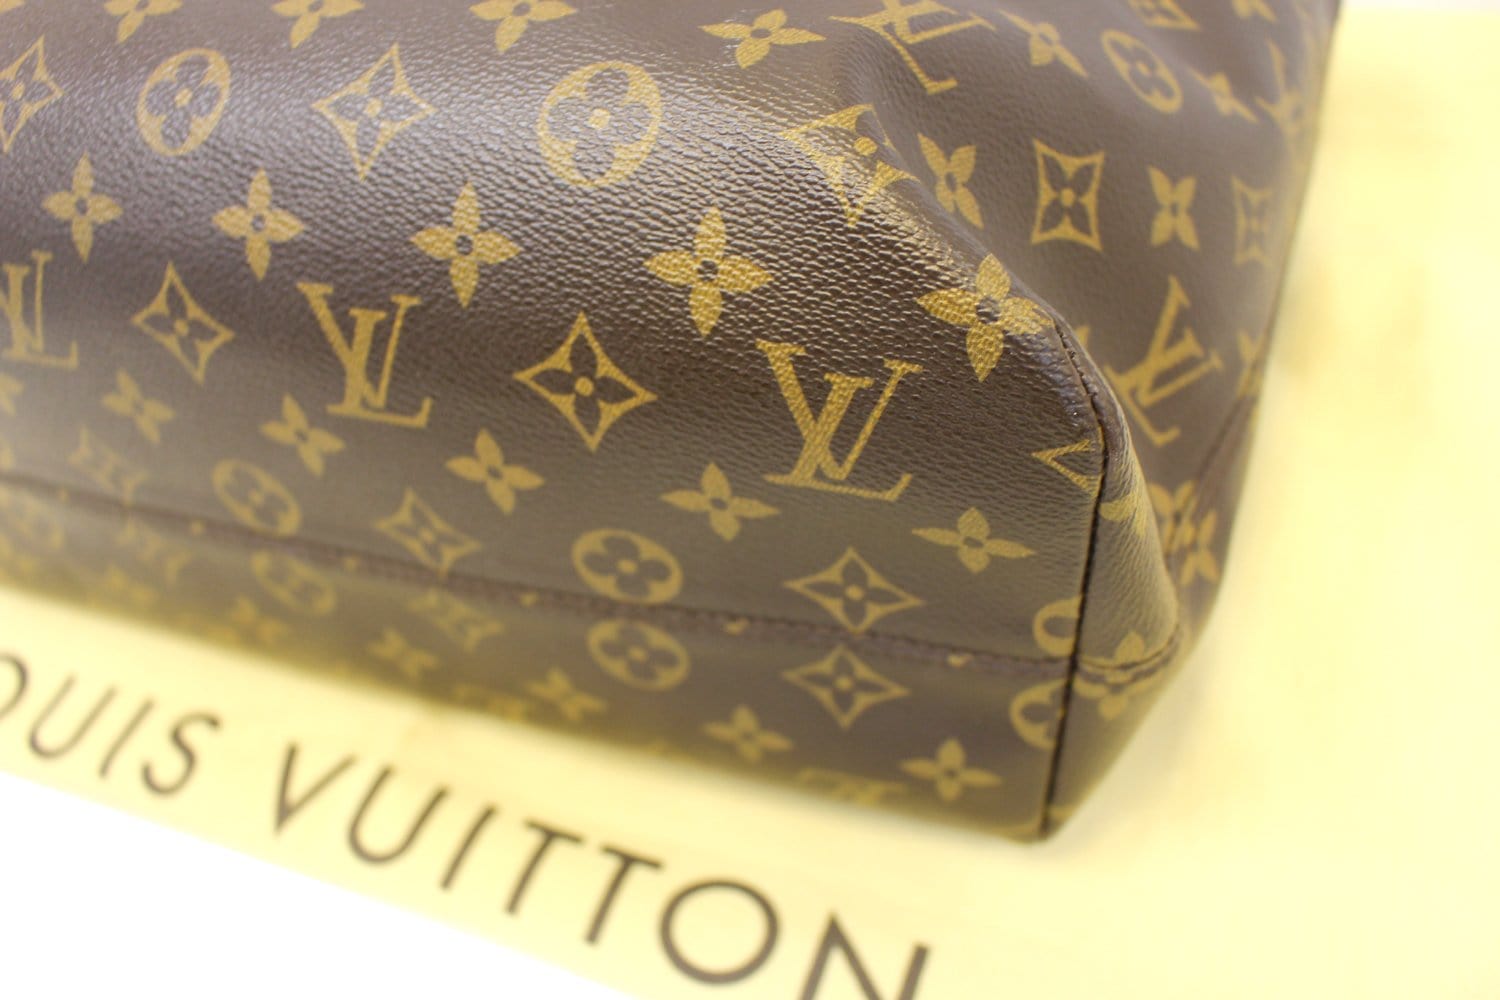 Louis Vuitton 2012 pre-owned monogram Raspail PM handbag - ShopStyle  Shoulder Bags